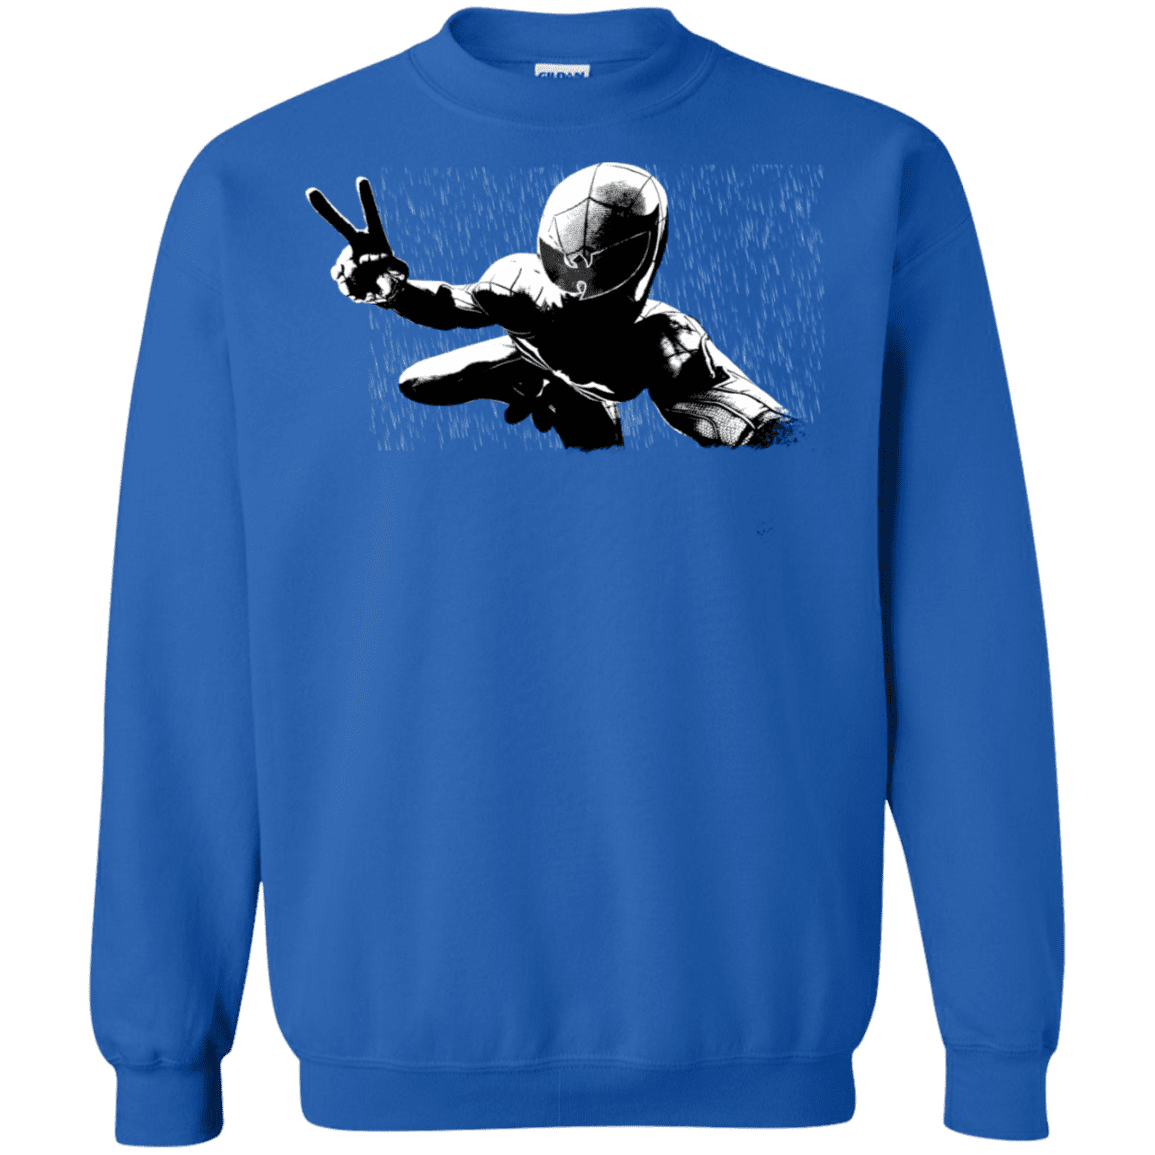 Sweatshirts Royal / S Its Yourz Crewneck Sweatshirt